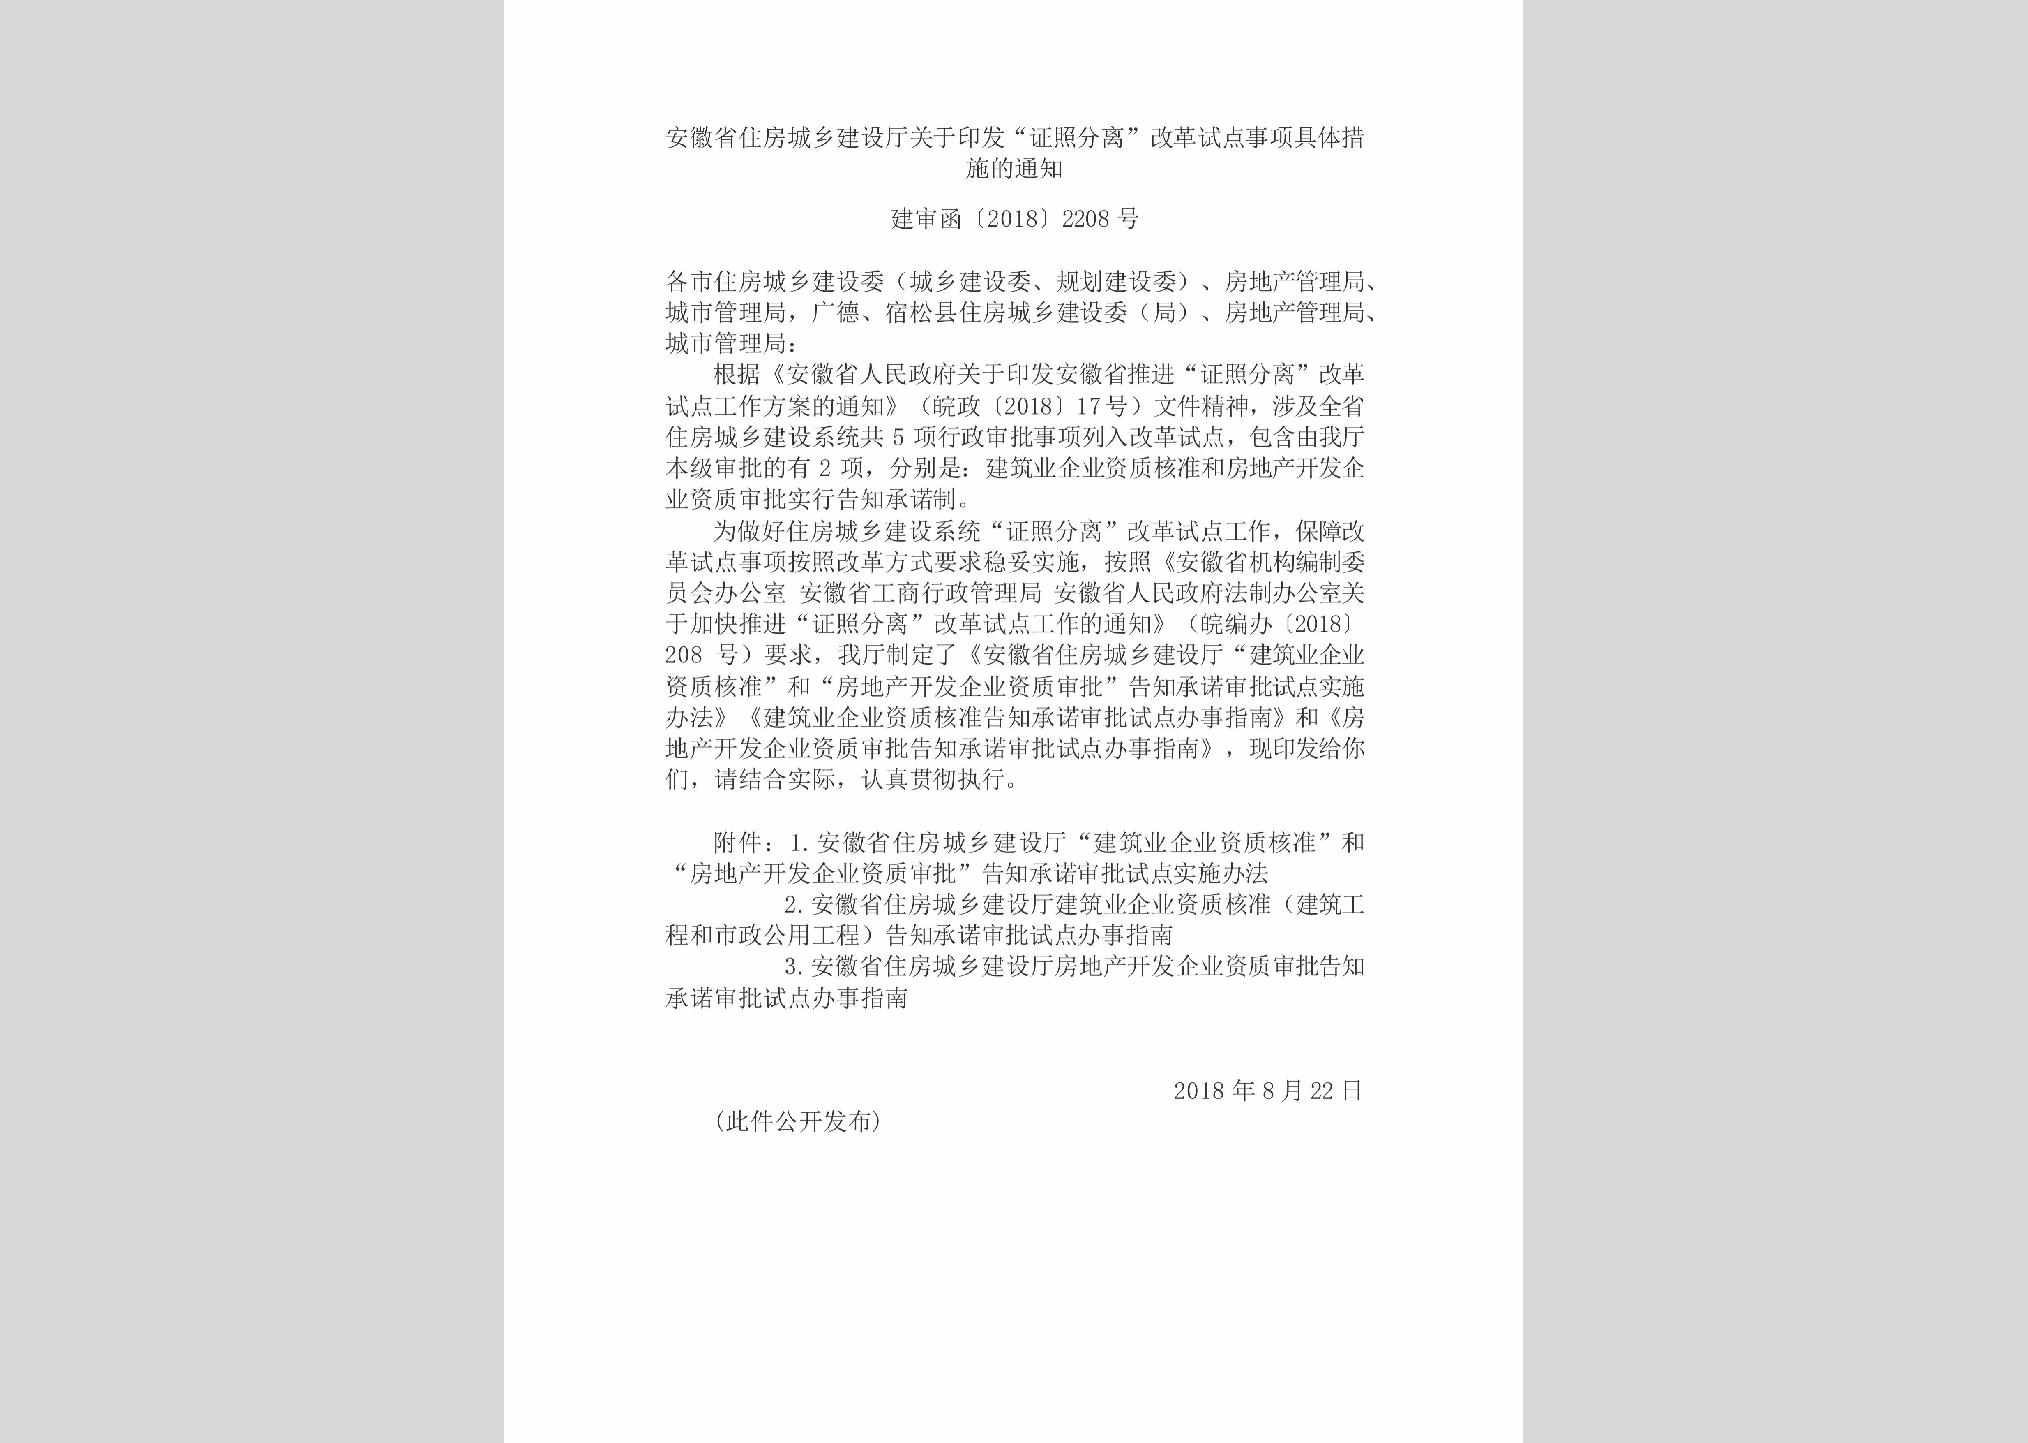 建审函[2018]2208号：安徽省住房城乡建设厅关于印发“证照分离”改革试点事项具体措施的通知